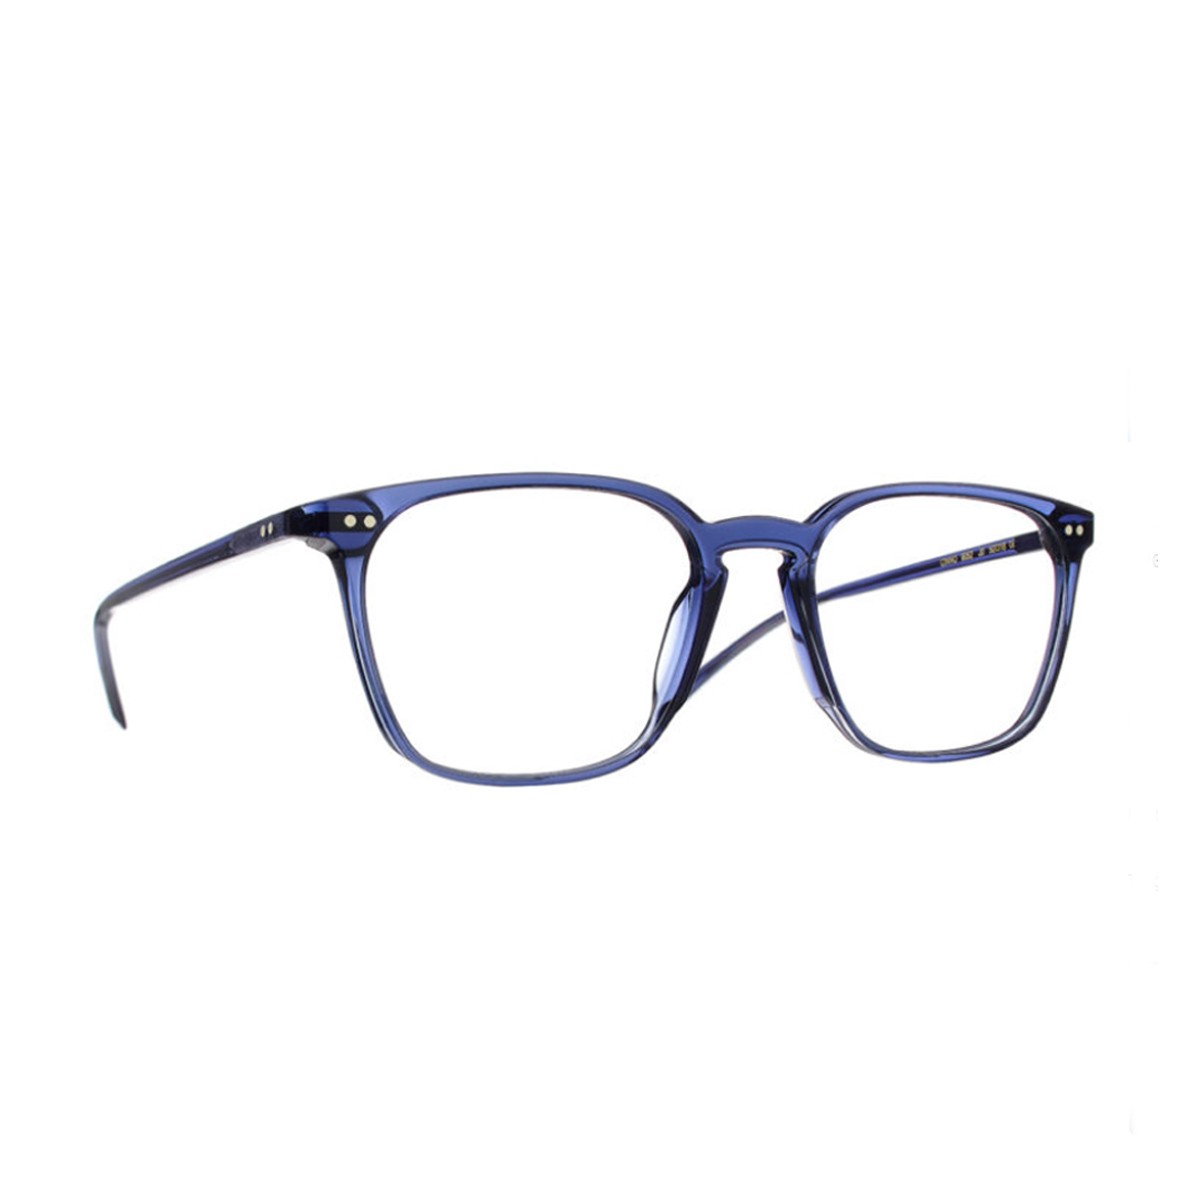 11EL4BL0A - - Talla | Men's eyeglasses